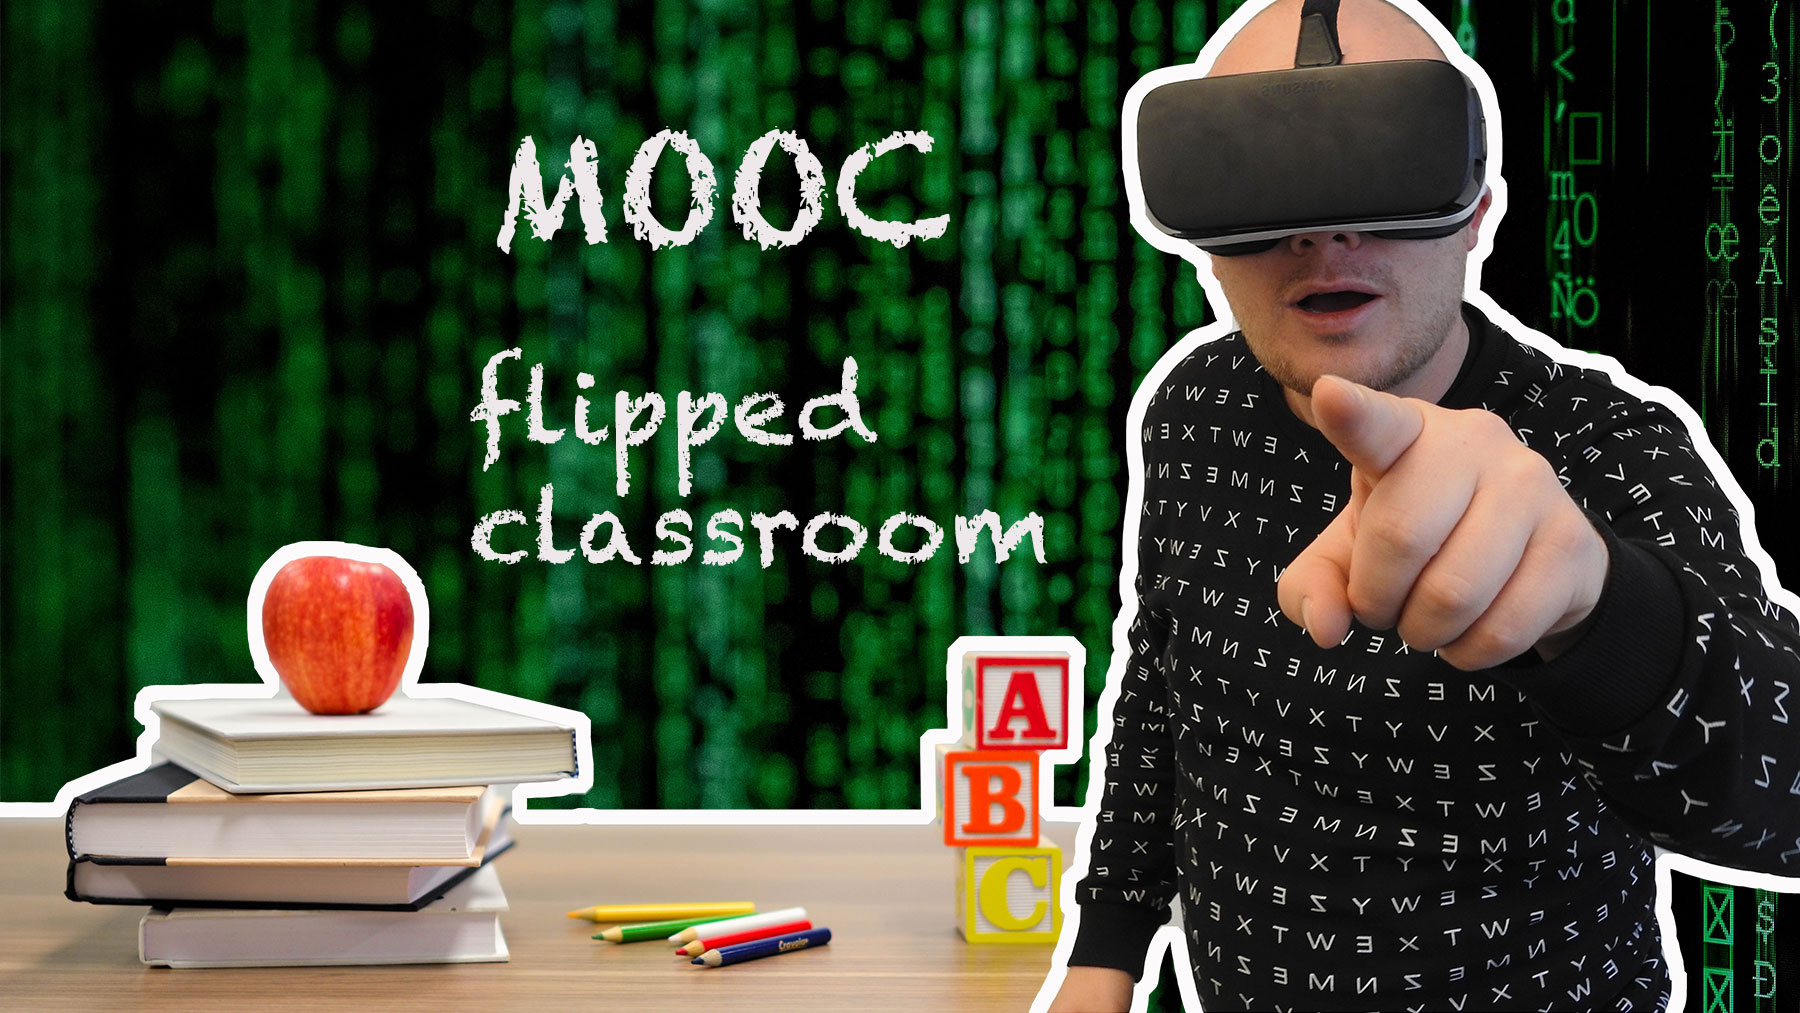 Moocs och flipped classroom är två av de nya trenderna inom utbildning och kompetensutveckling.